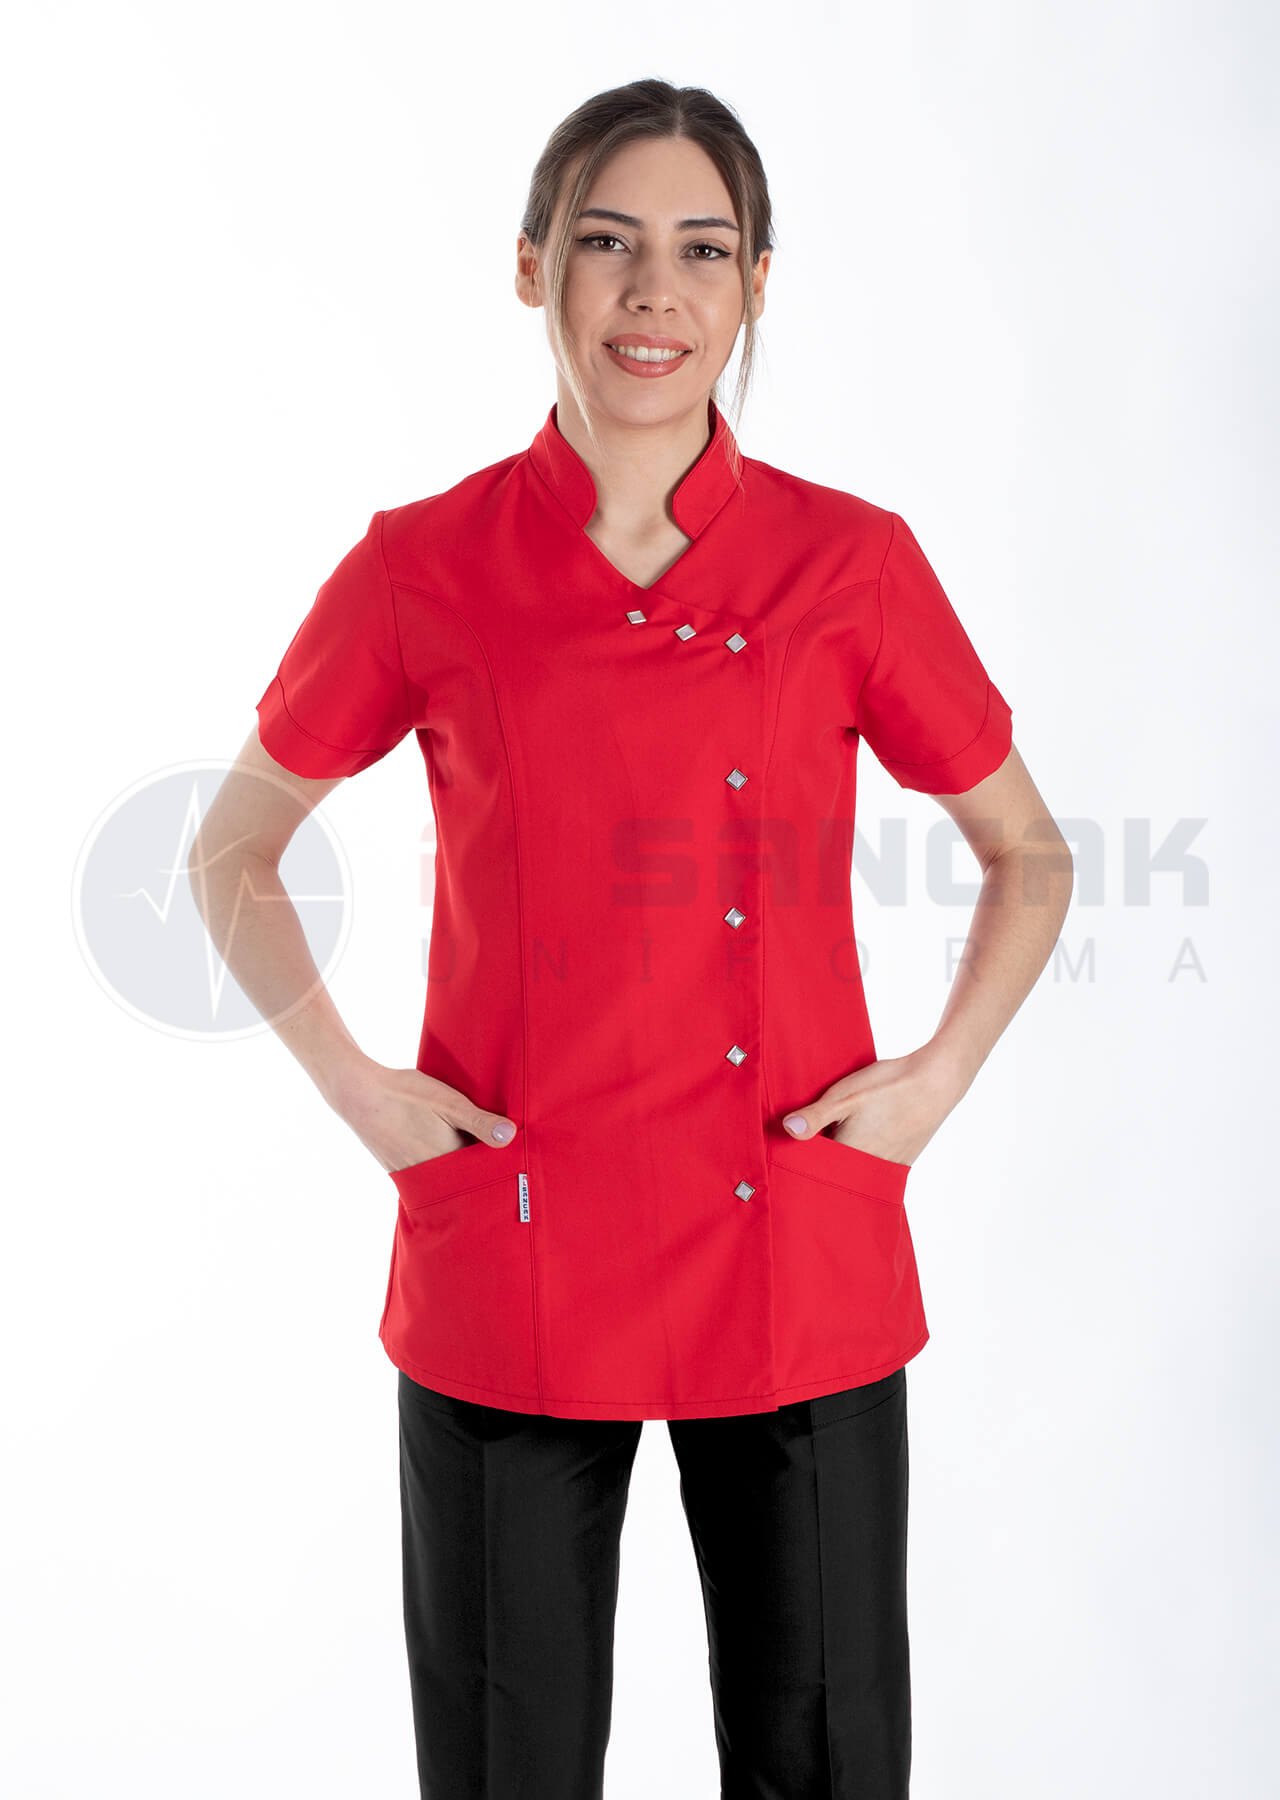 Luxe Flex Kırmızı/Siyah Likralı Hemşire ve Doktor Forması Takımı